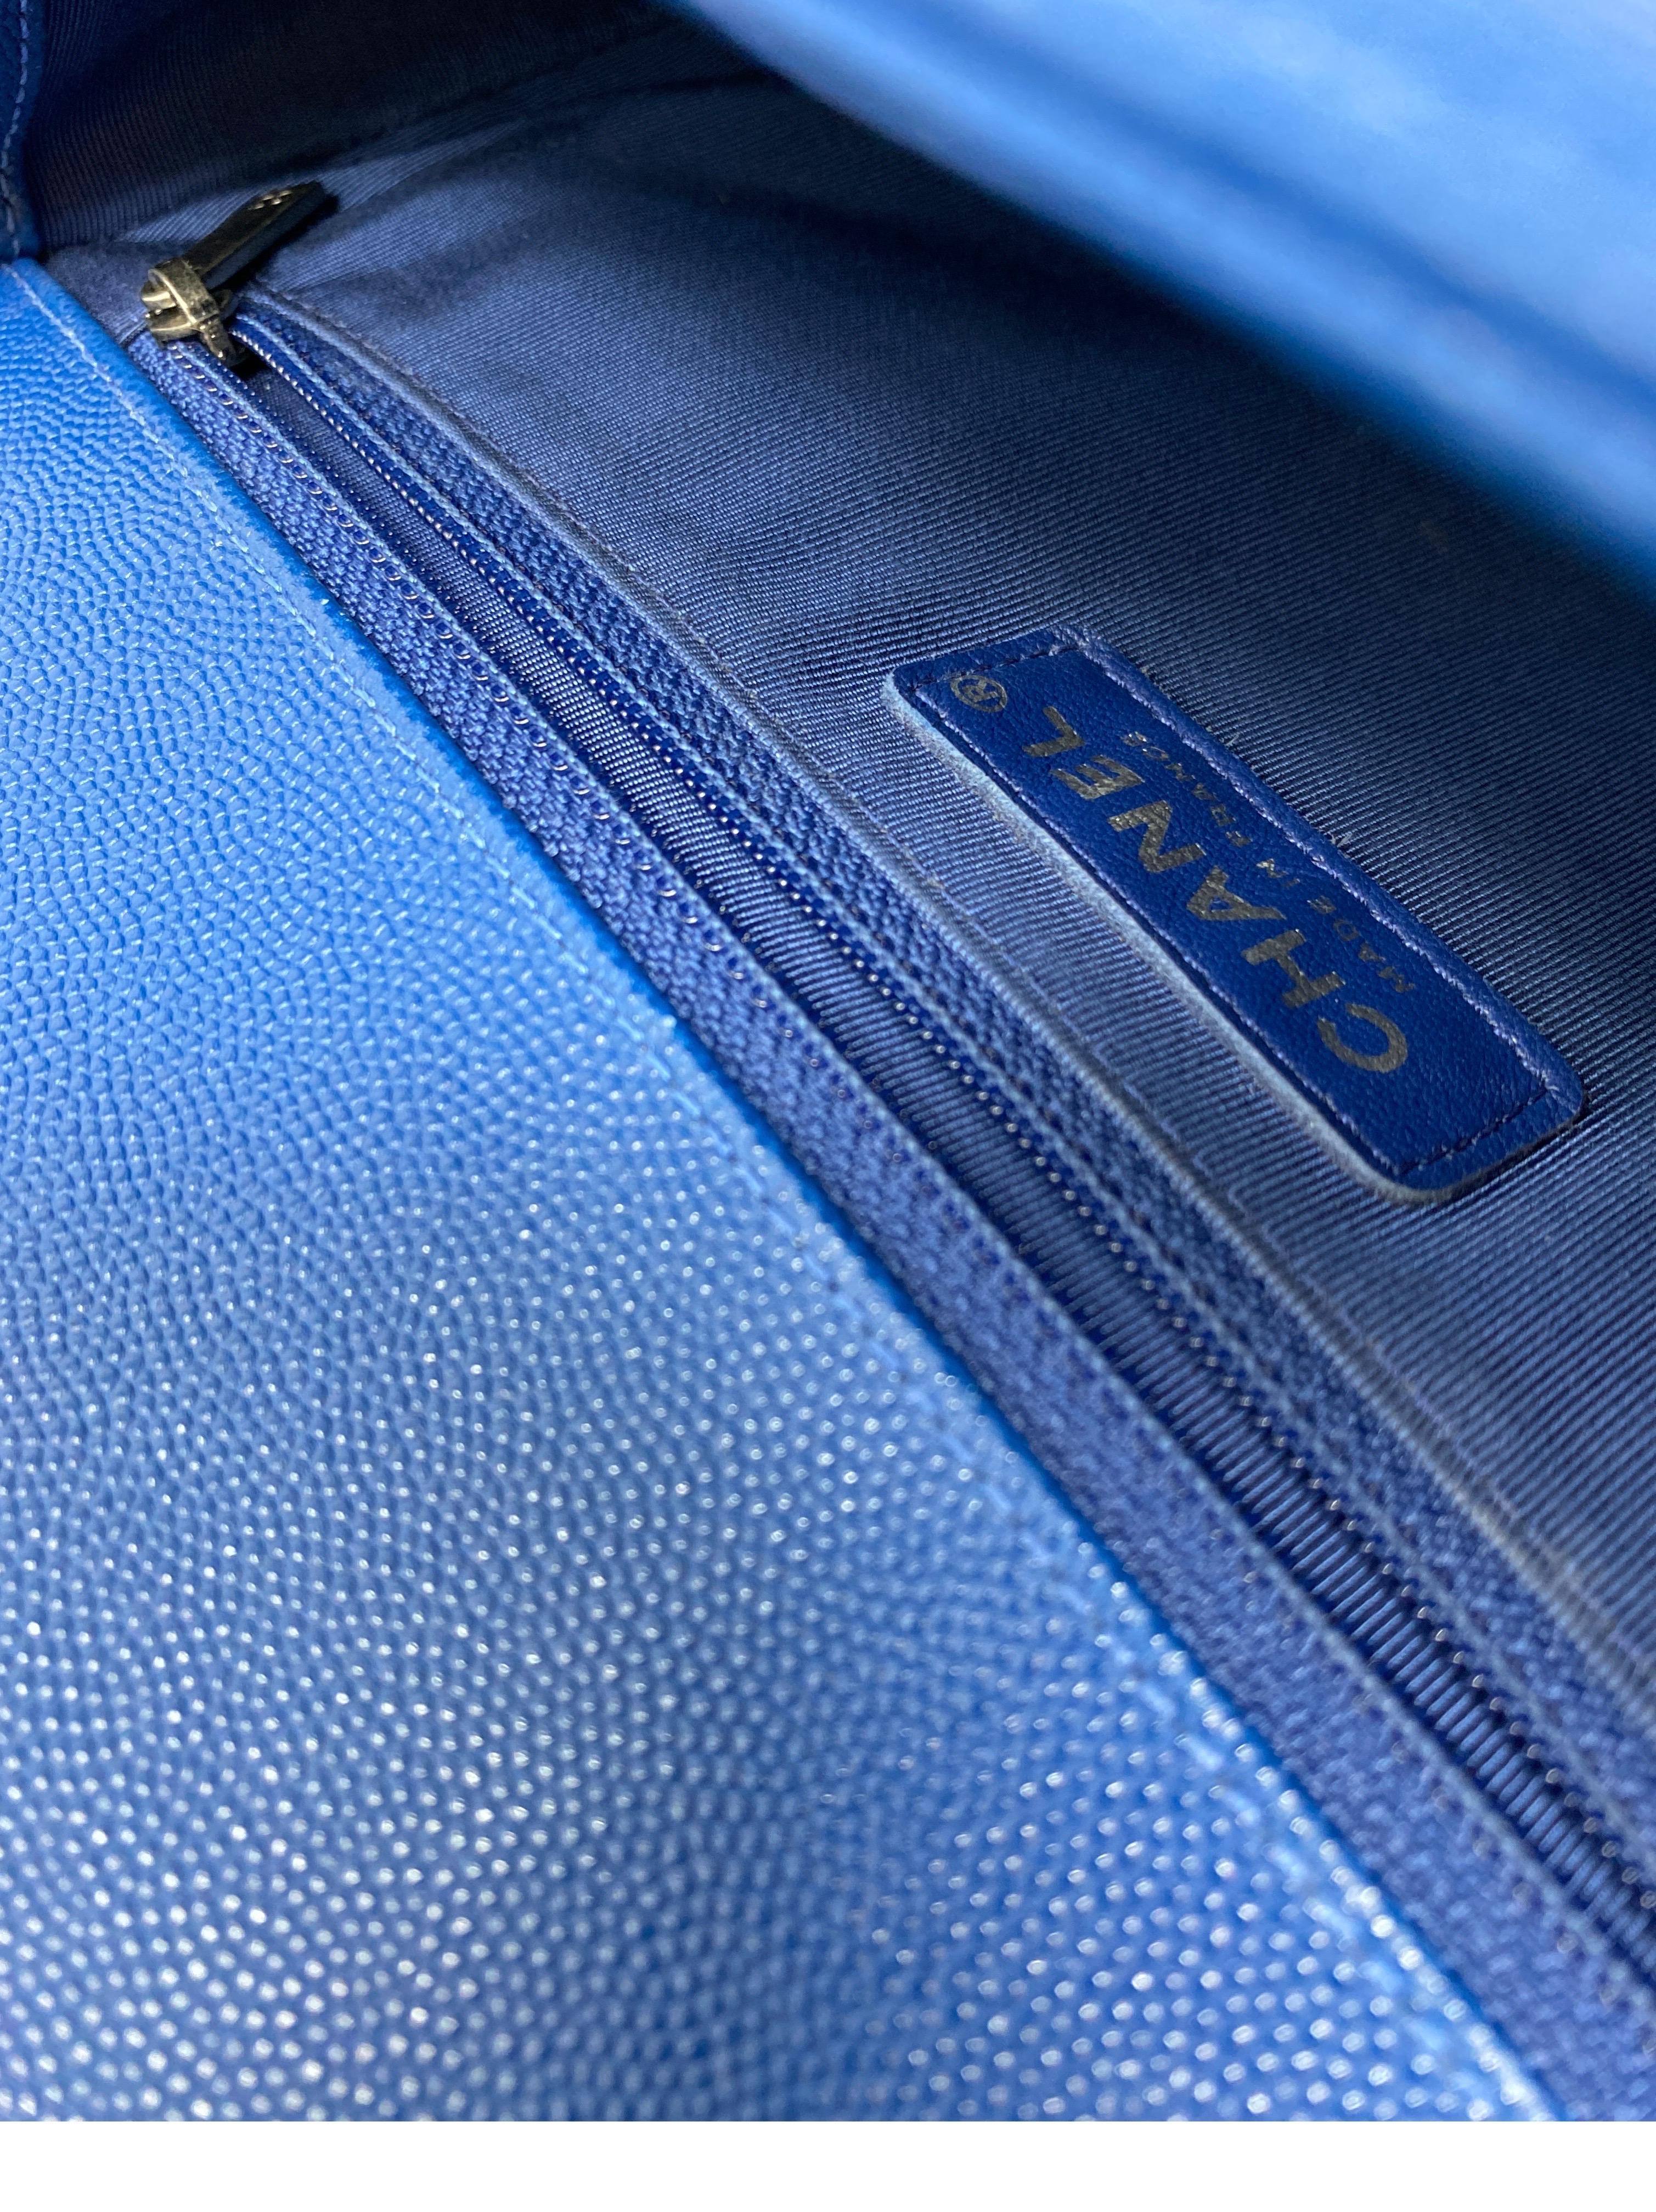 Chanel Blue Boy Bag  10